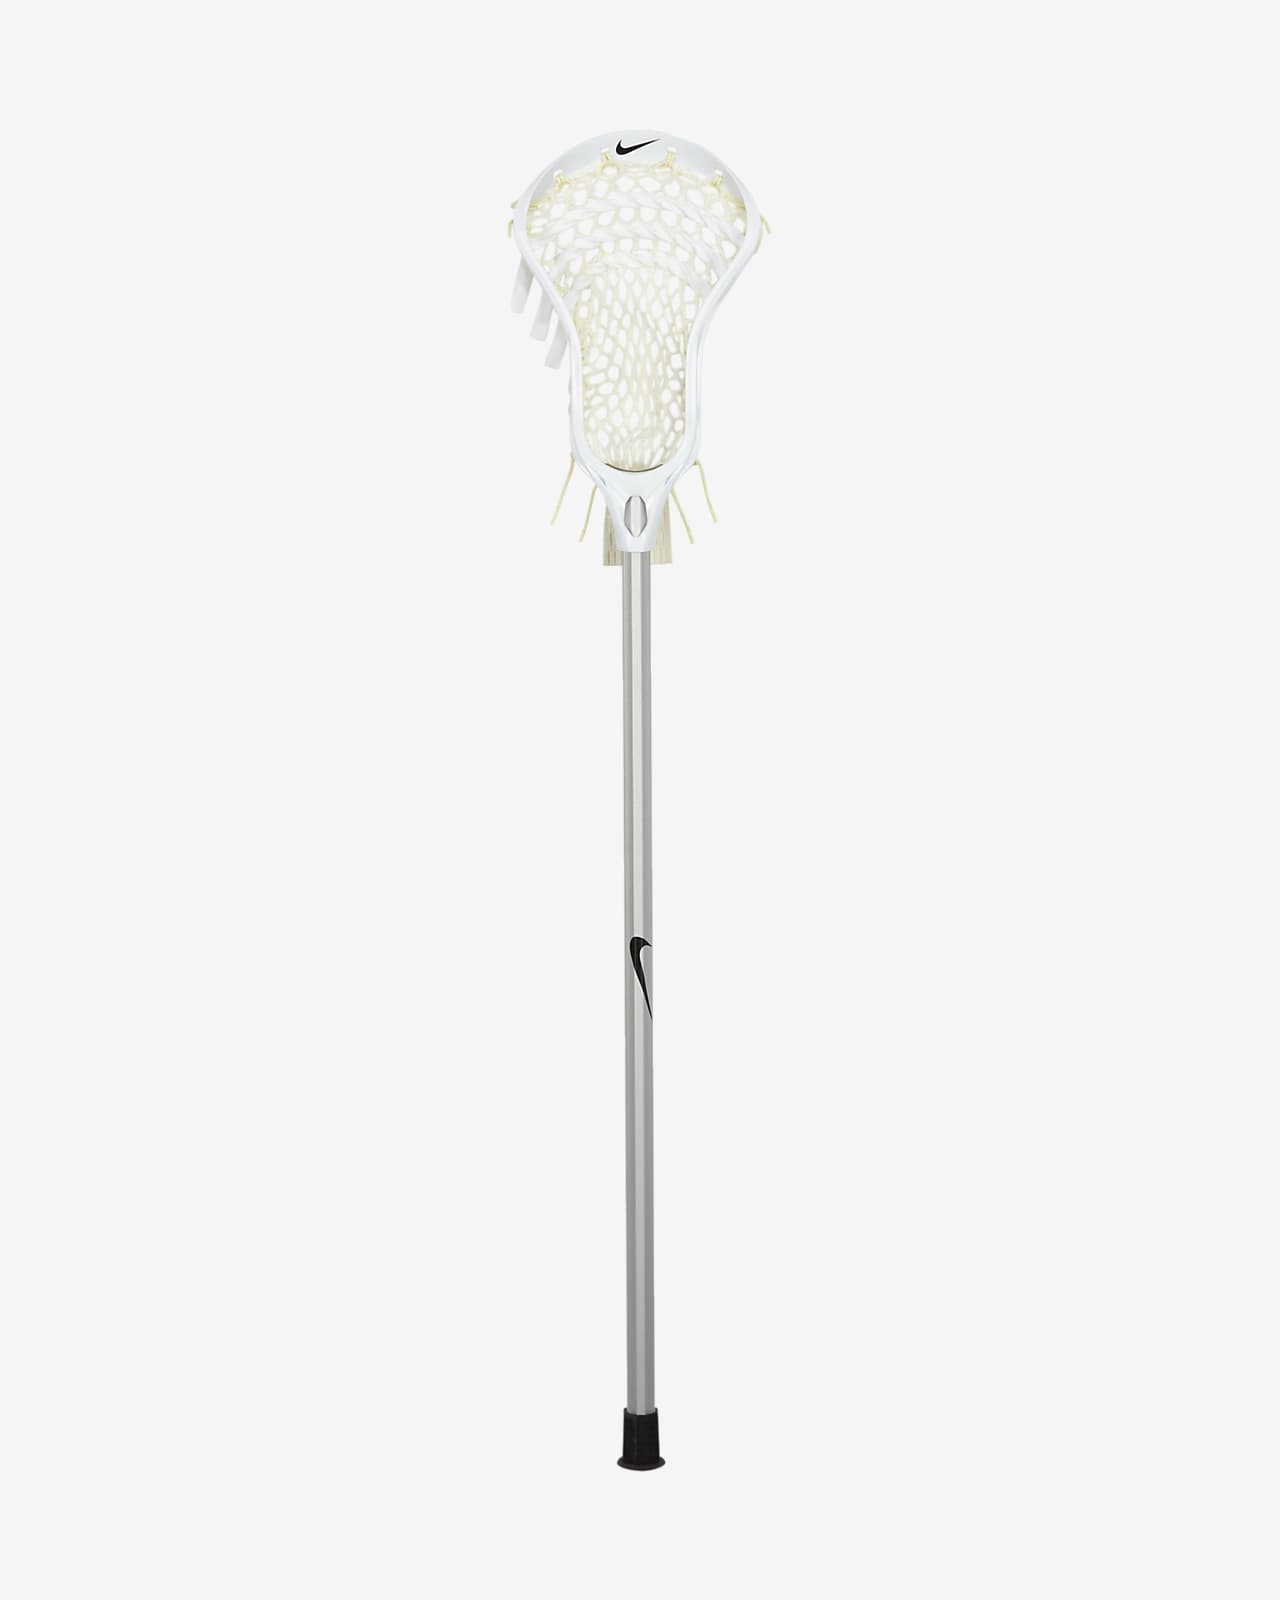 Nike Vapor 2 A/M Men's Lacrosse Complete Stick